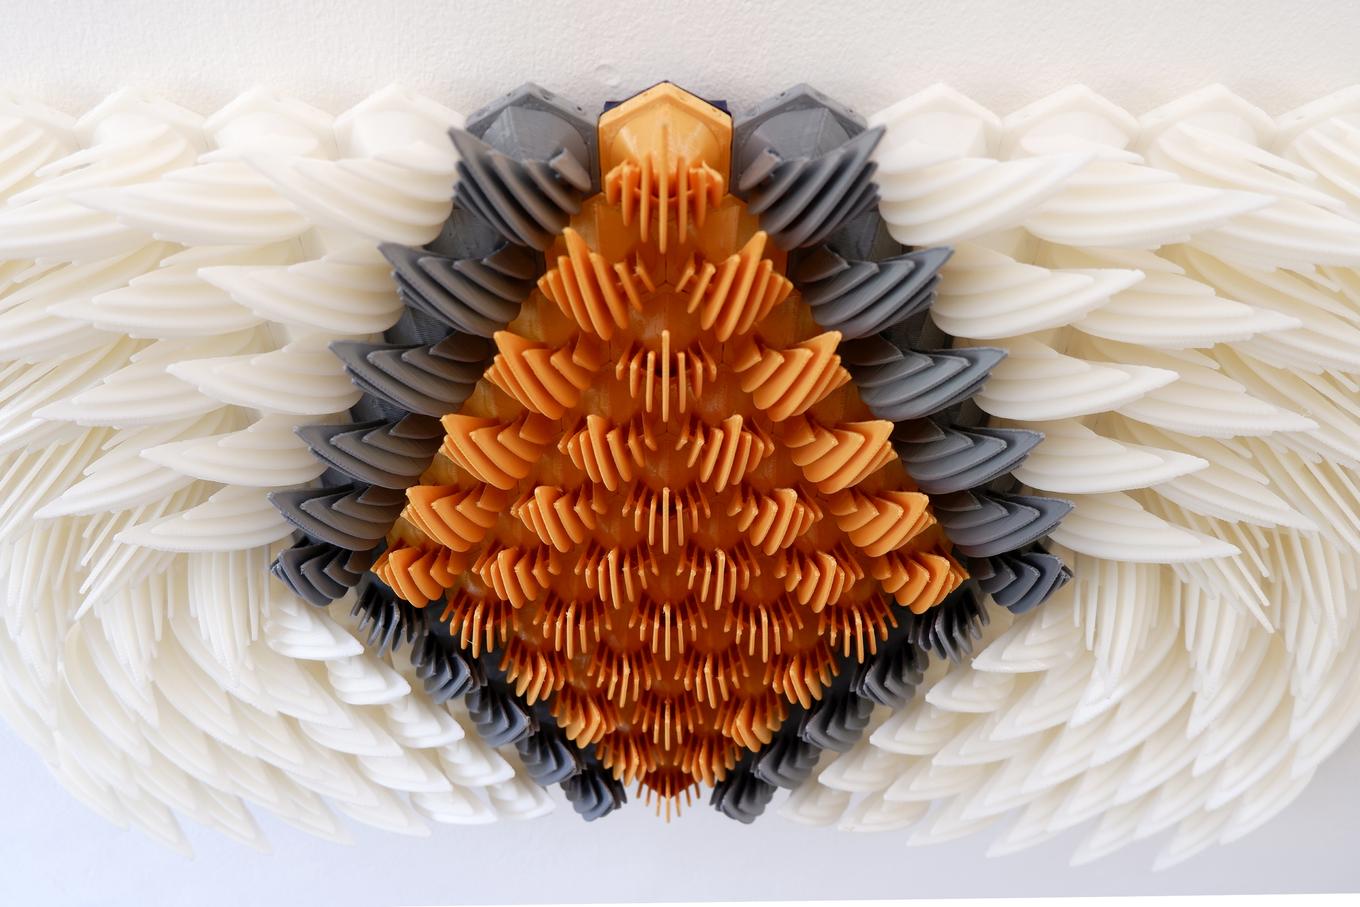 Turbulence | Herschel Shapiro | Abstract 3D Wall Art